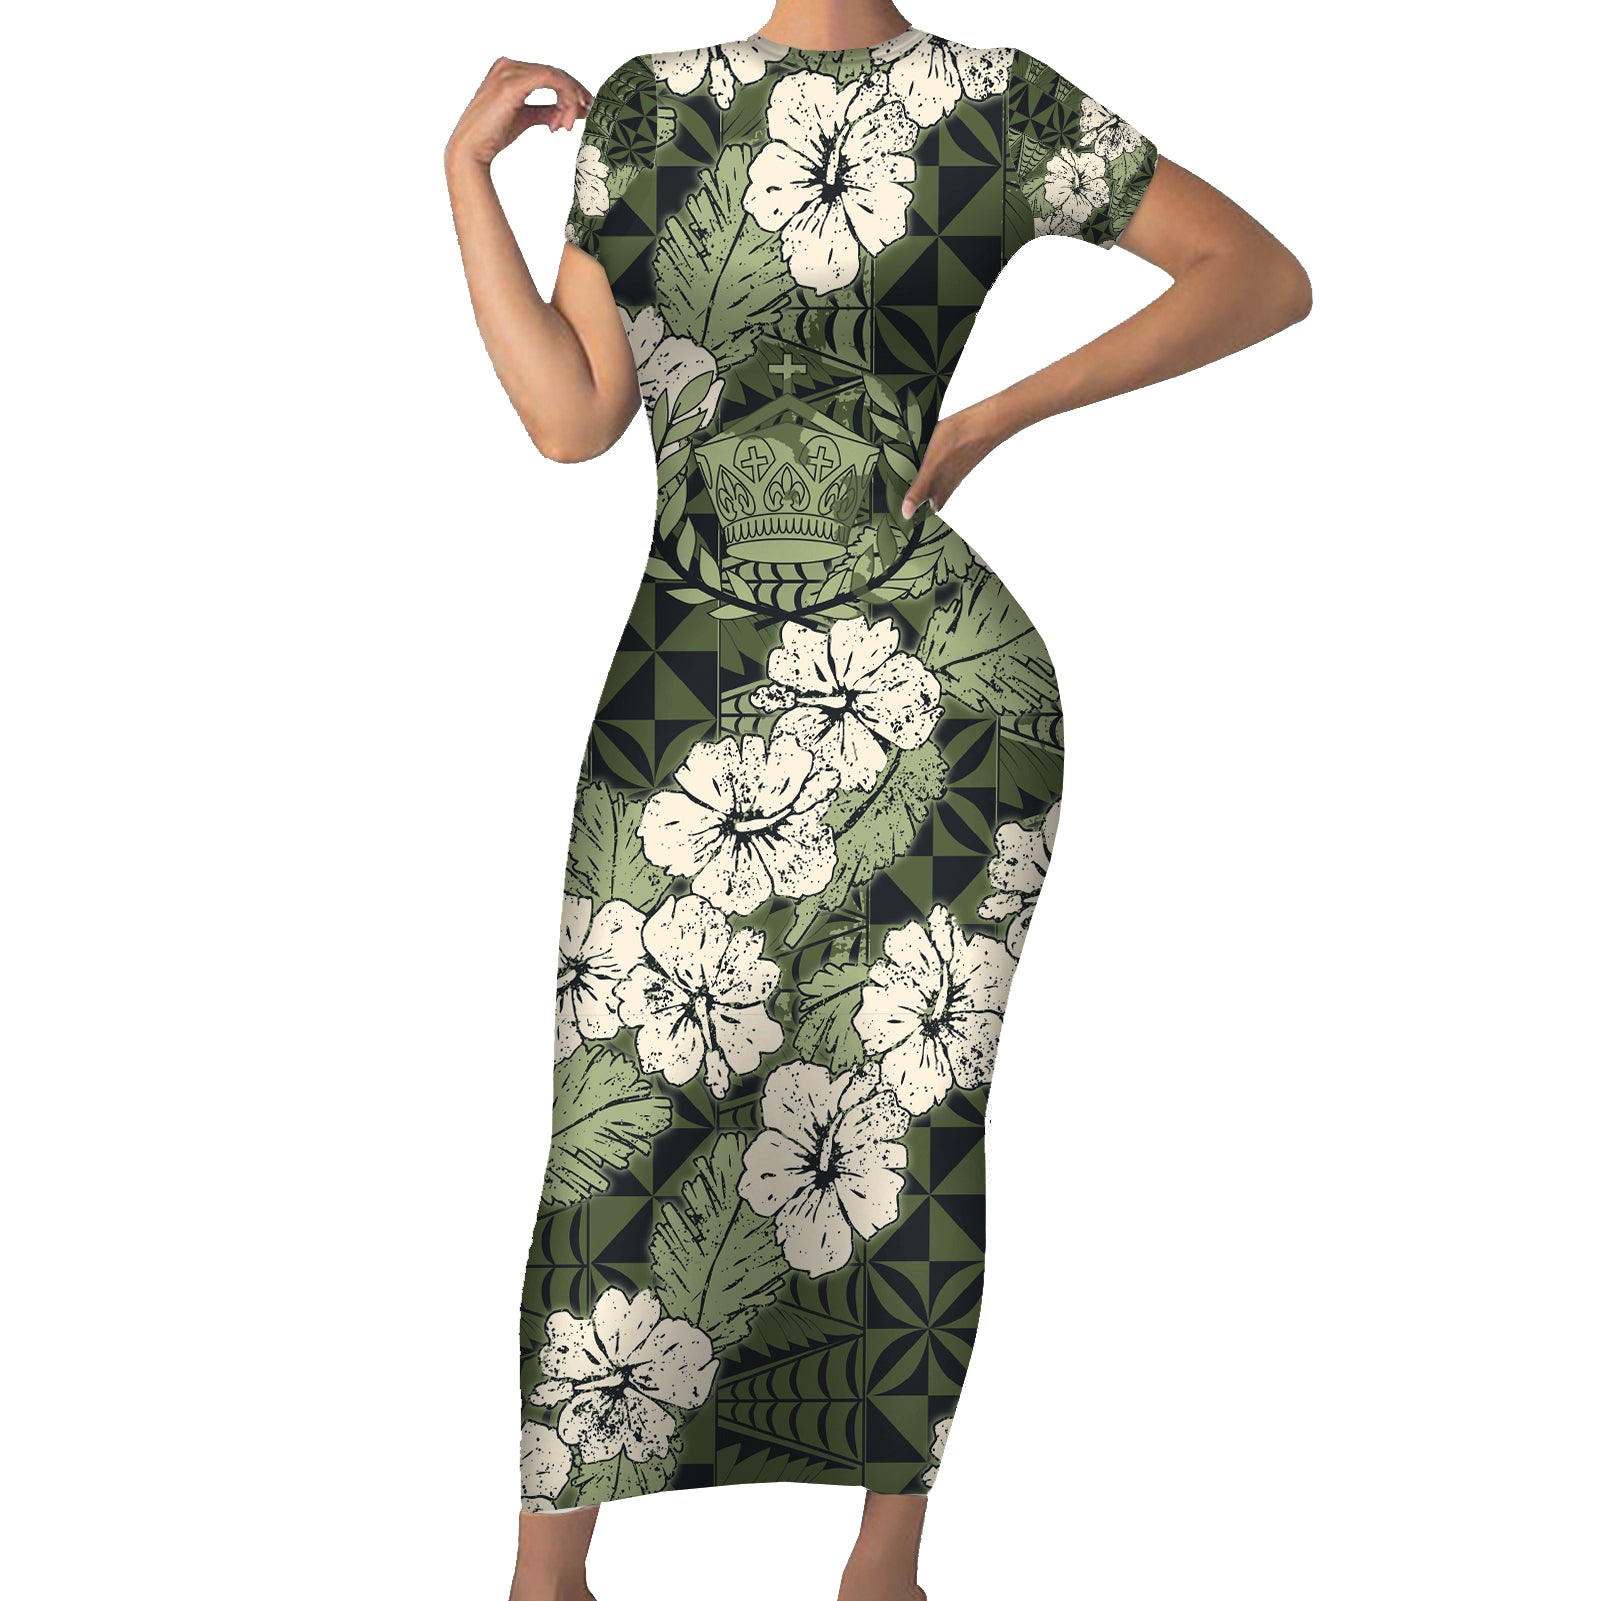 Tongan Kupesi Ngatu Hibiscus Vintage Motif Short Sleeve Bodycon Dress